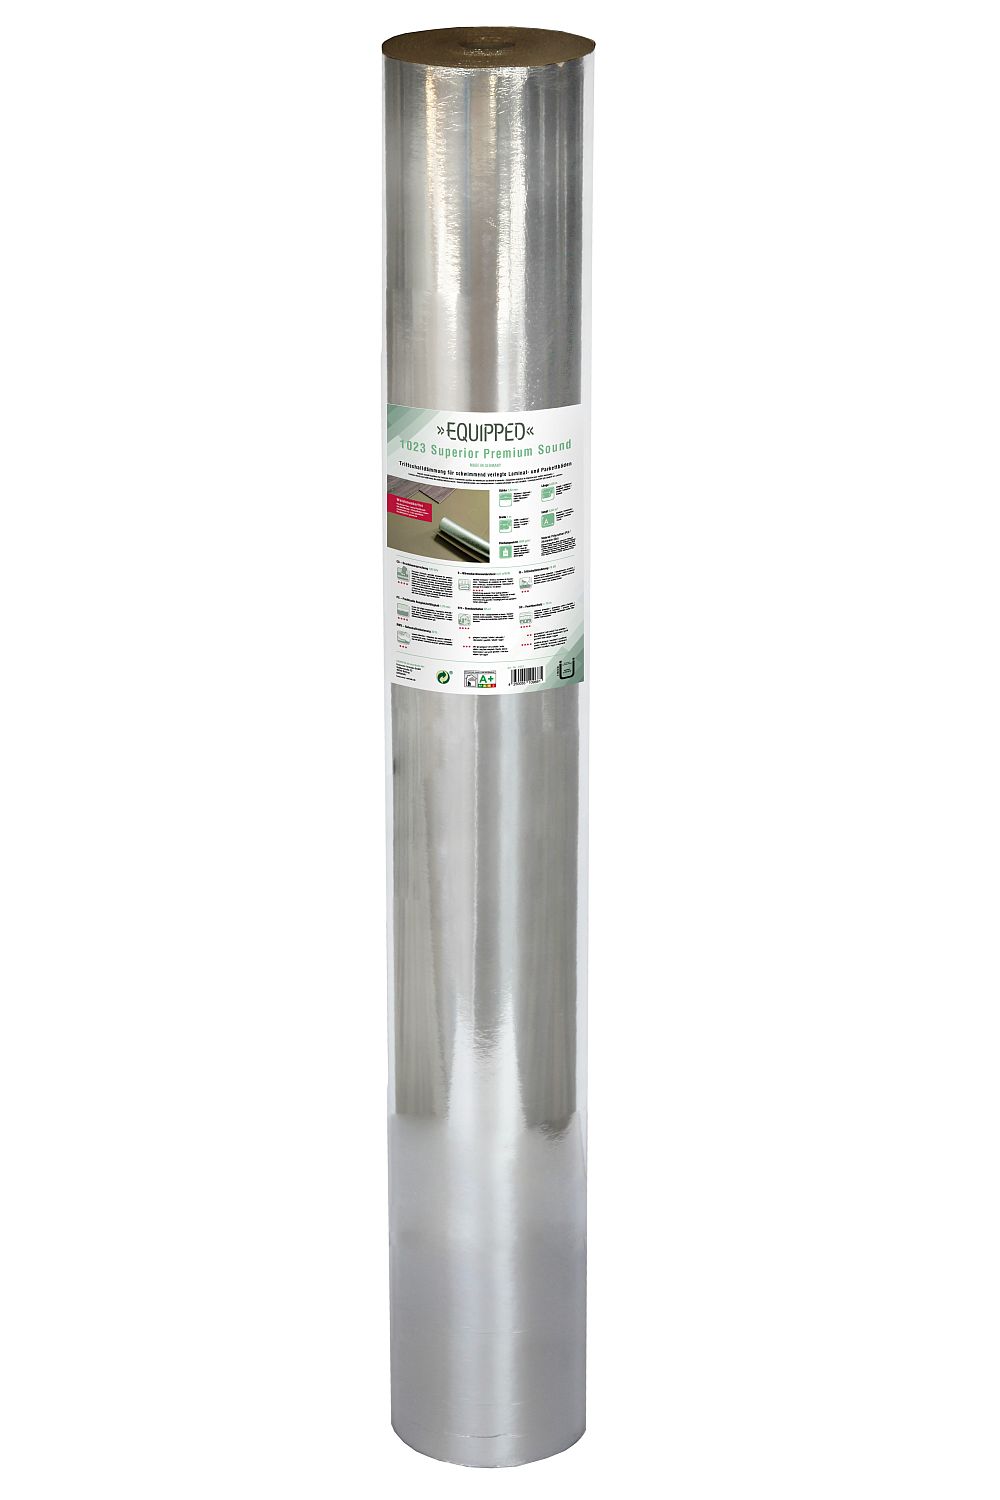 EQUIPPED 1023 Superior Premium Sound (2.8mm) - 5.5m²/Rolle - Breite 1m - Unterlage / Trittschalldämmung für Laminat